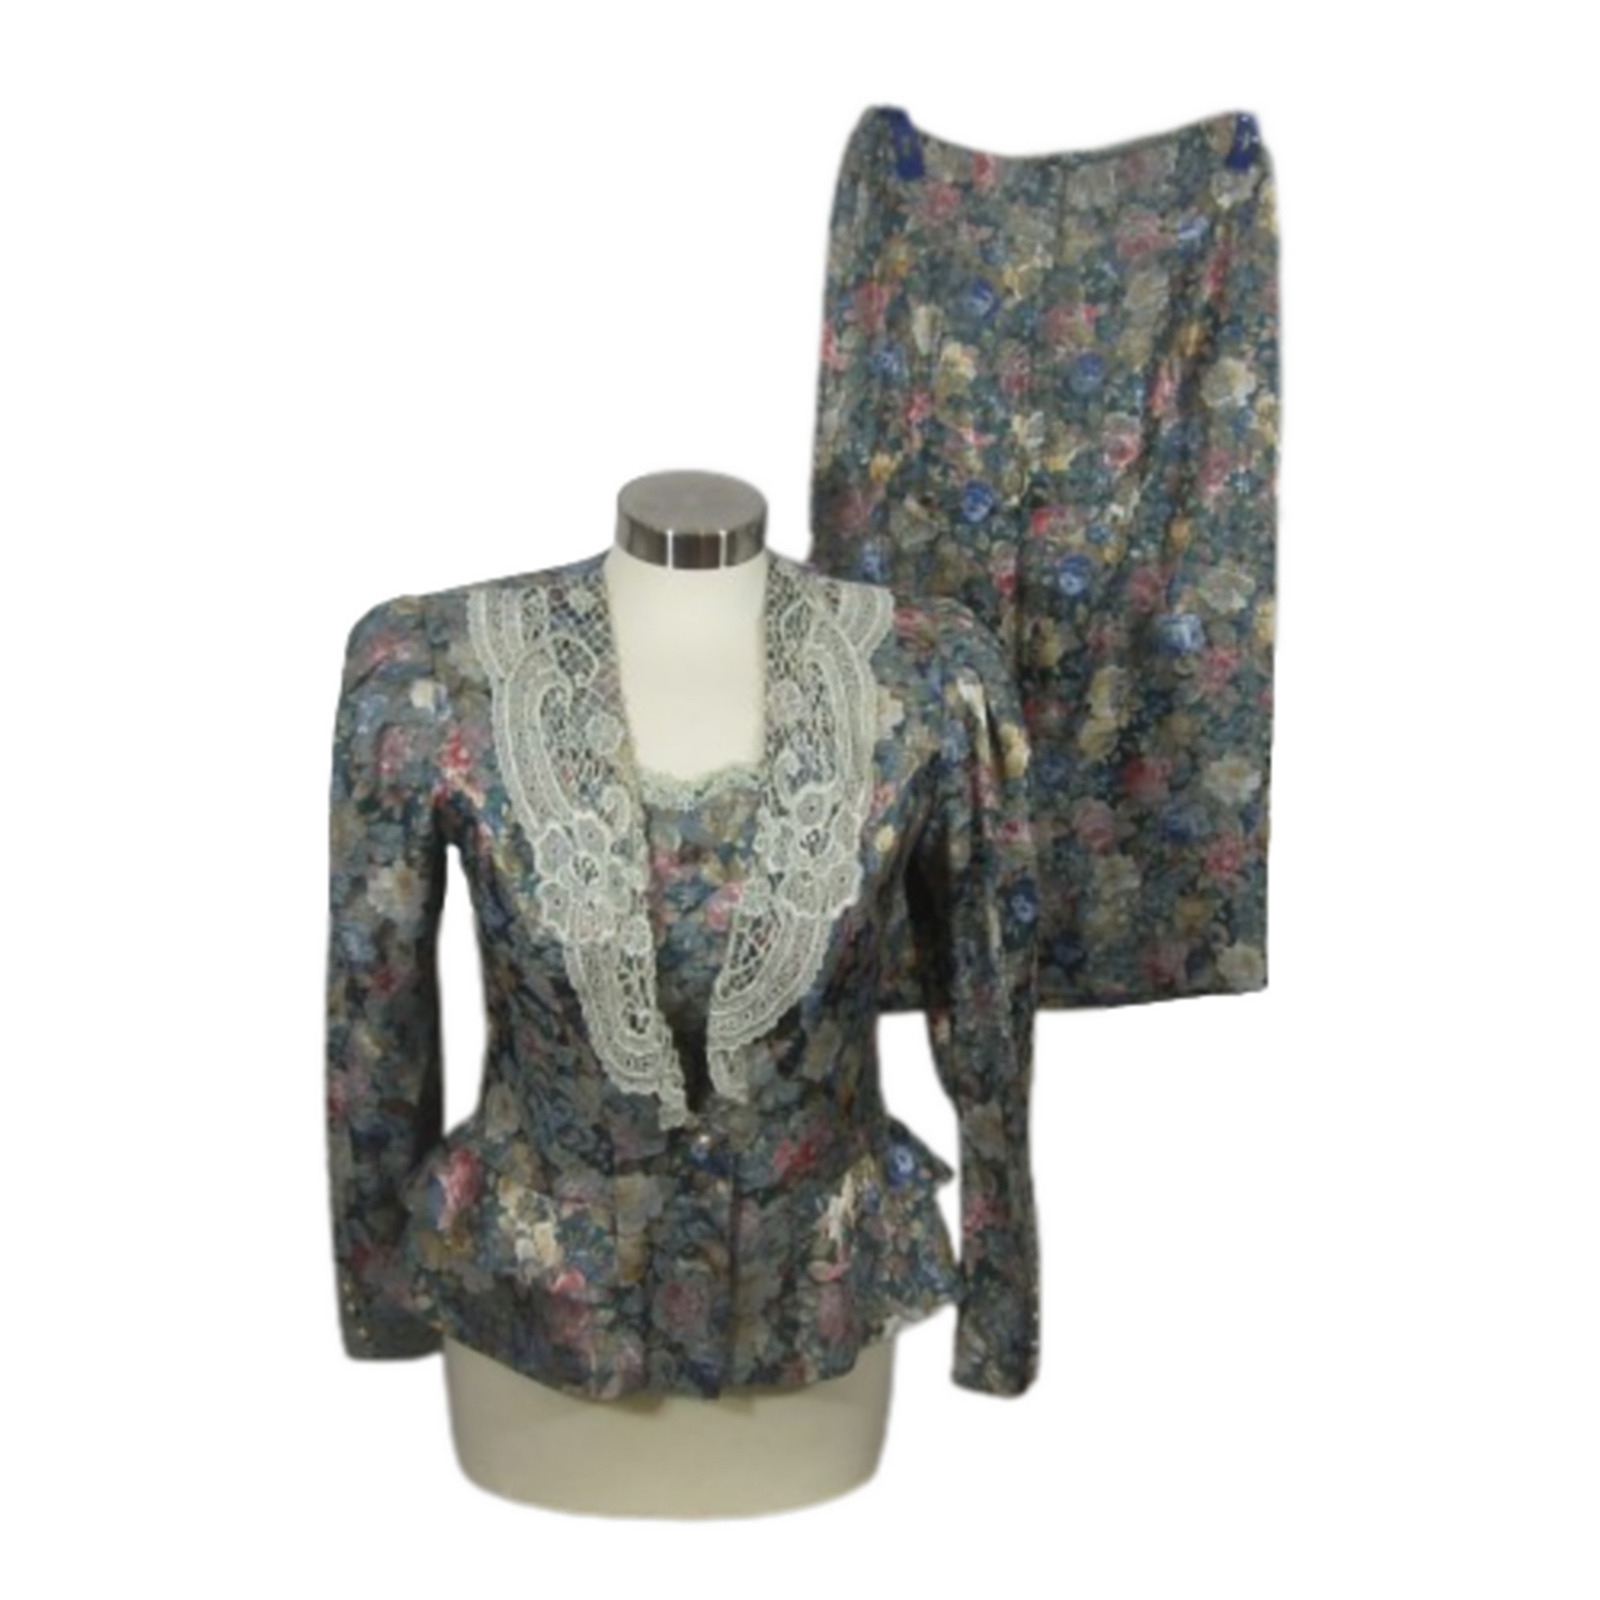 Francois Gerard Vintage women 2 piece suit 1980s sz 5/6 brocade floral w lace